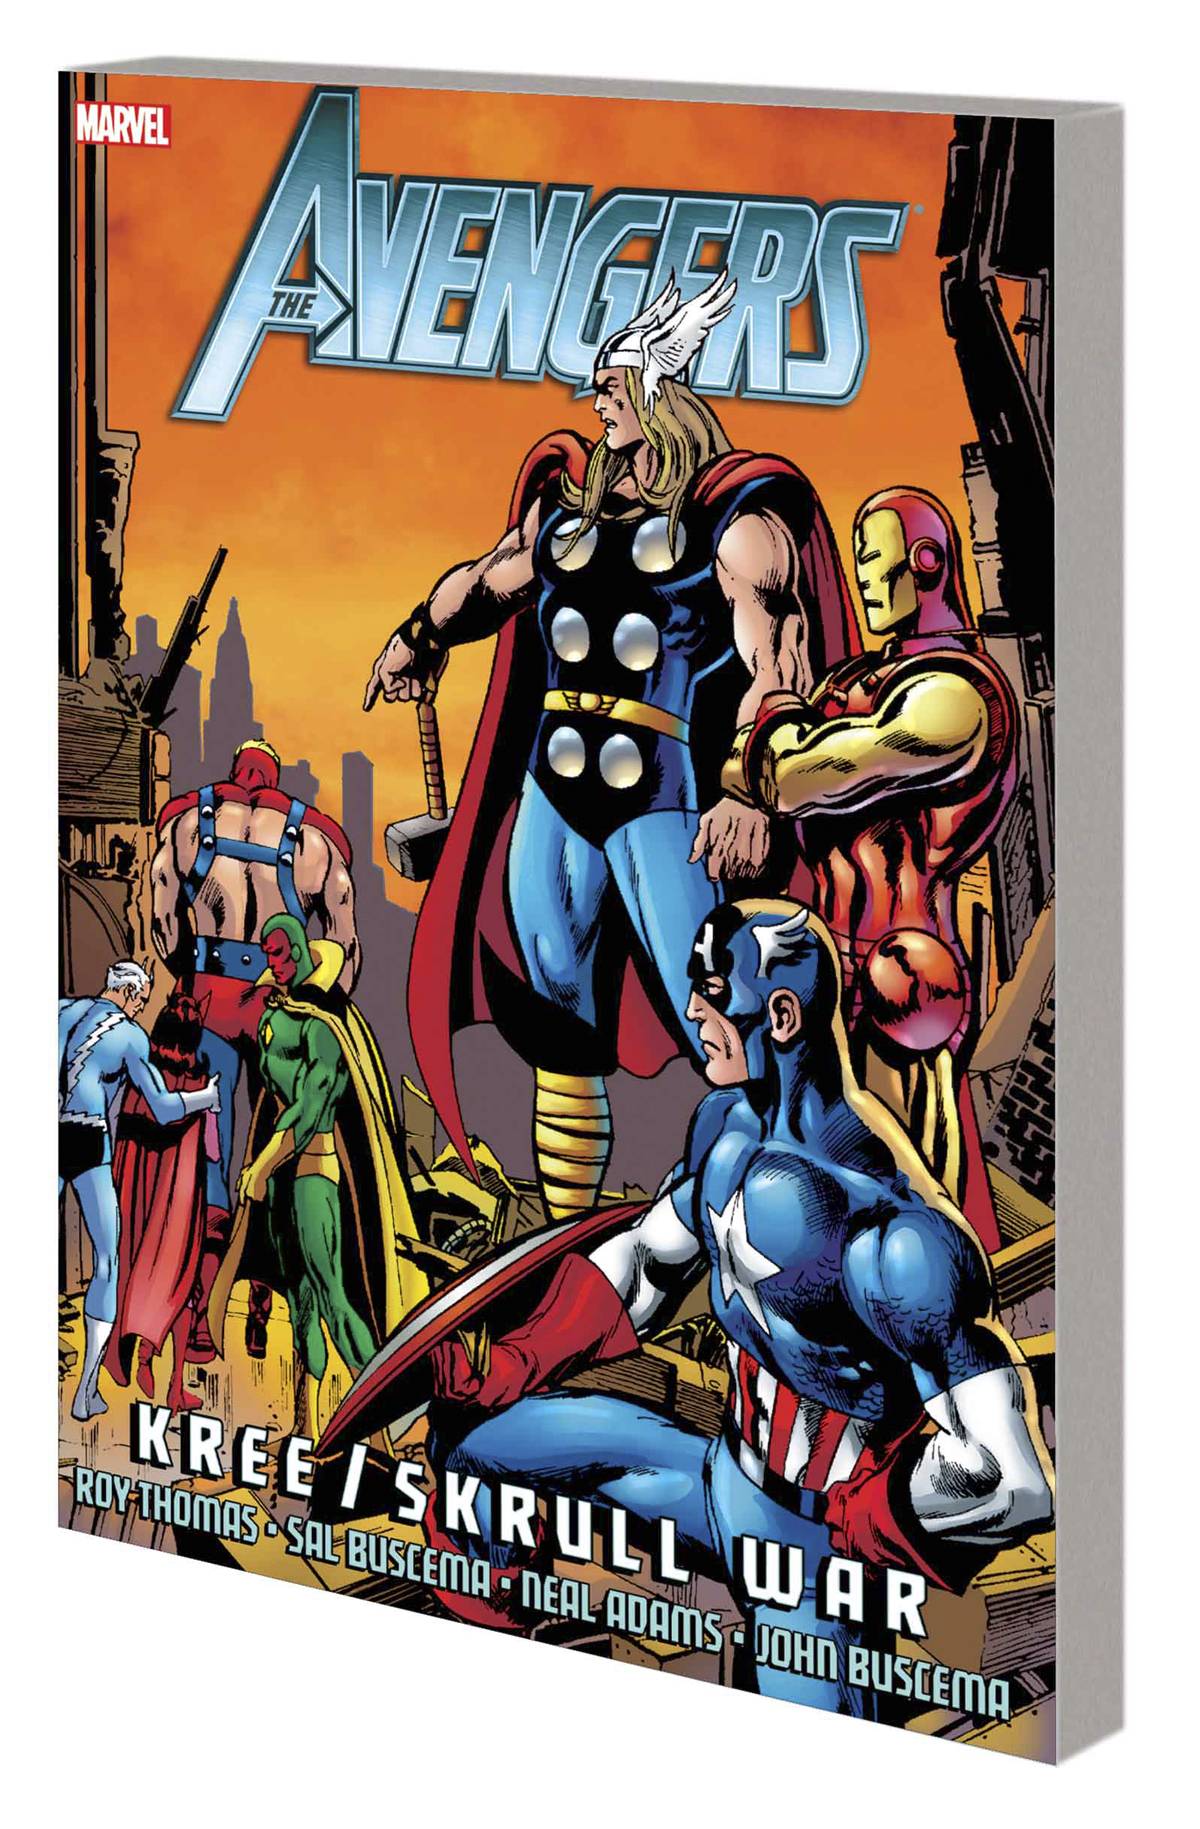 Avengers Graphic Novel Kree Skrull War All New Edition